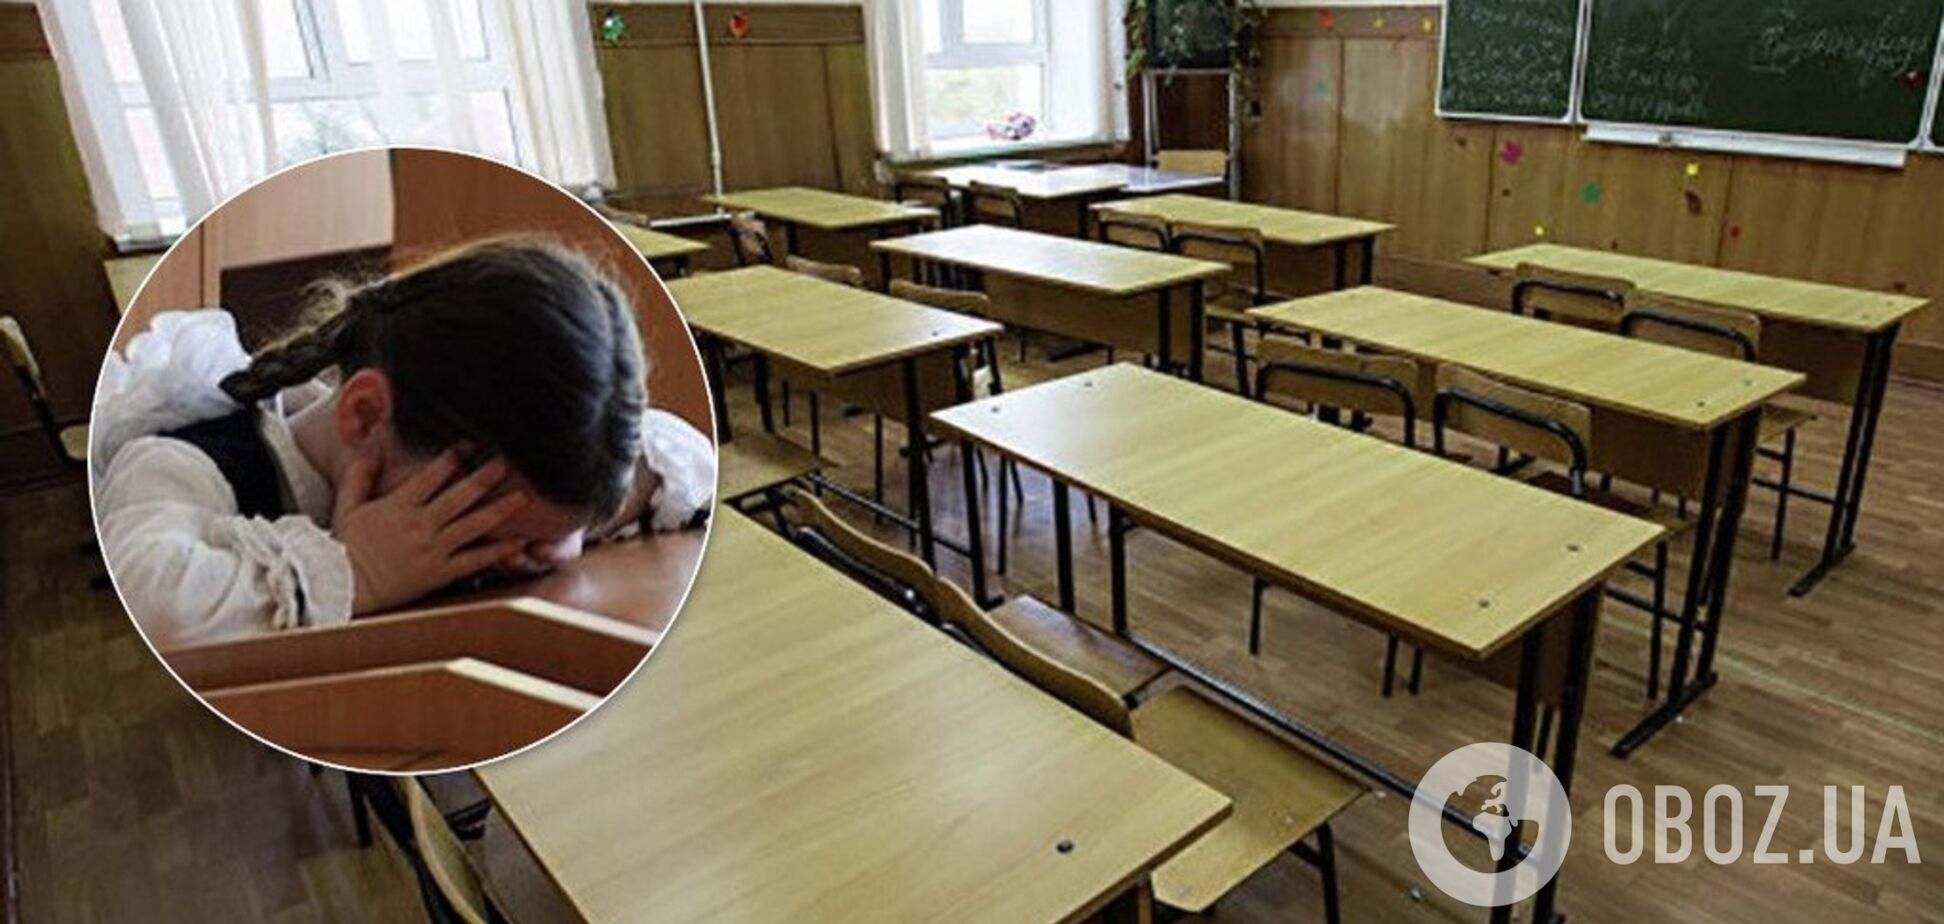 На Тернопільщині намагаються незаконно закрити школу: розгорівся скандал